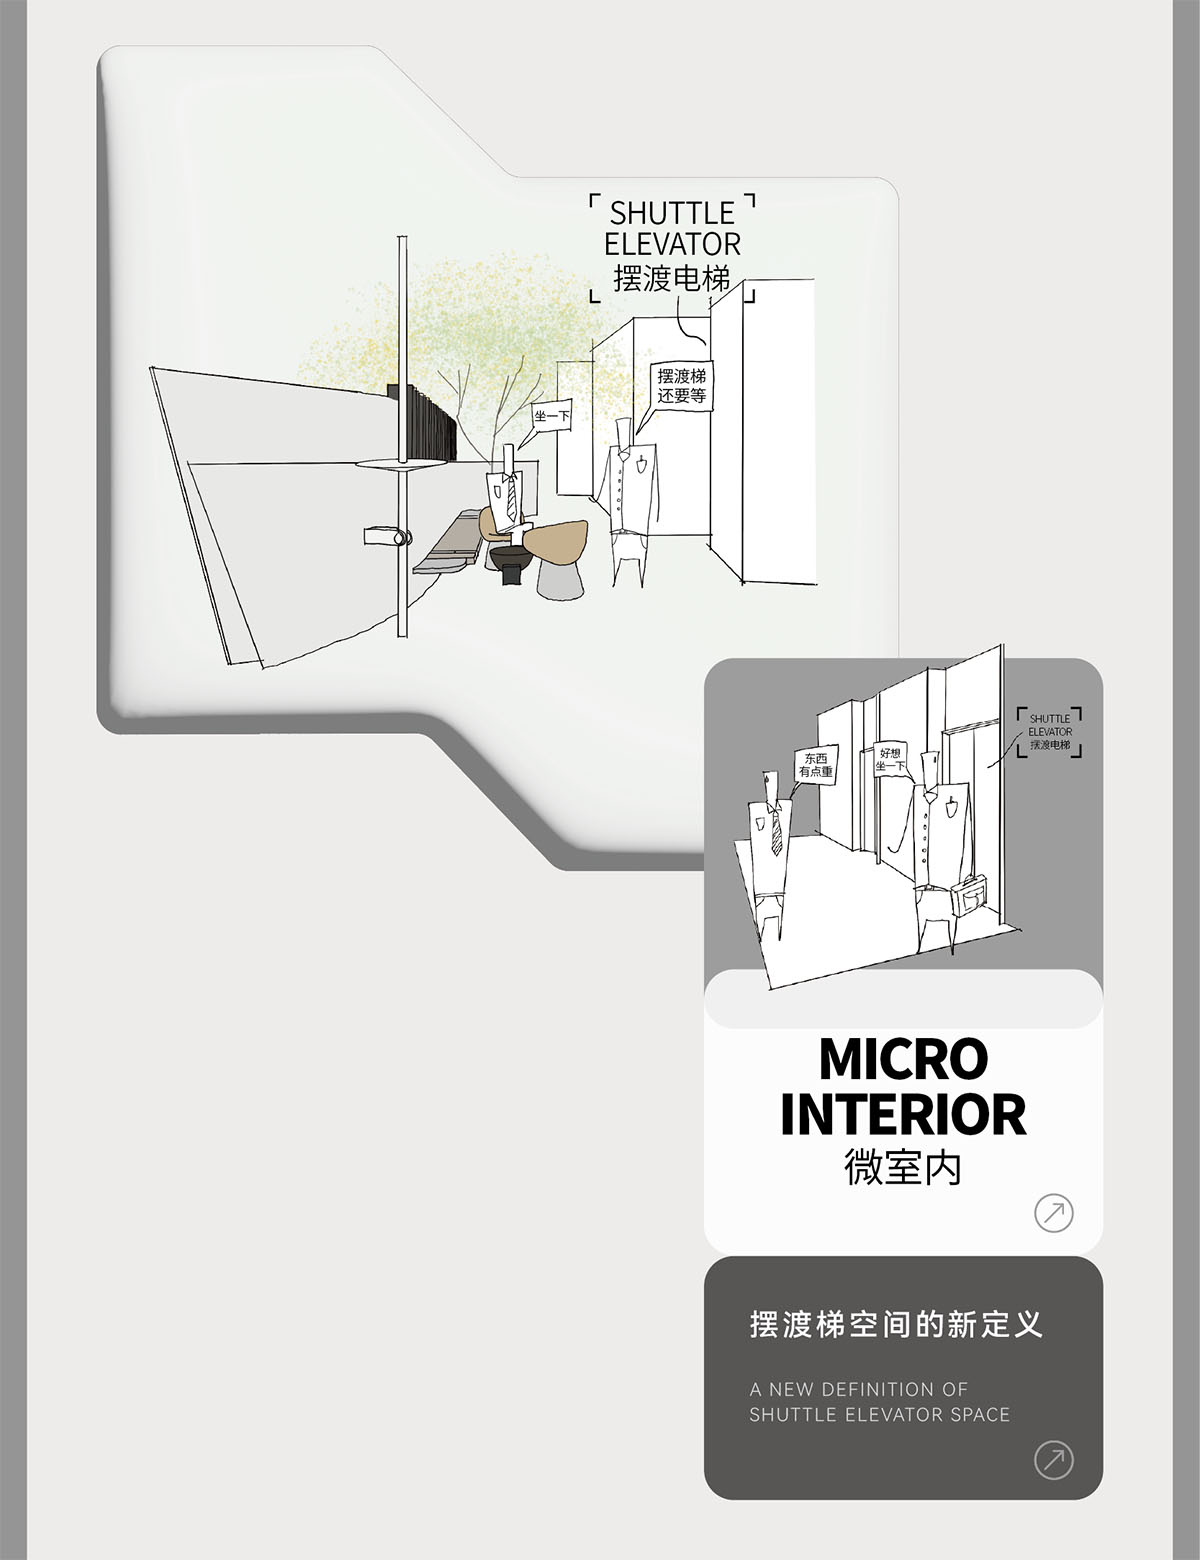 接待大堂設計,辦公樓接待大堂設計,電梯間設計,公共空間設計,辦公樓衛生間設計,杭州黃龍國際中心四期「微交互」擬態未來辦公方式,杭州,TOMO東木築造